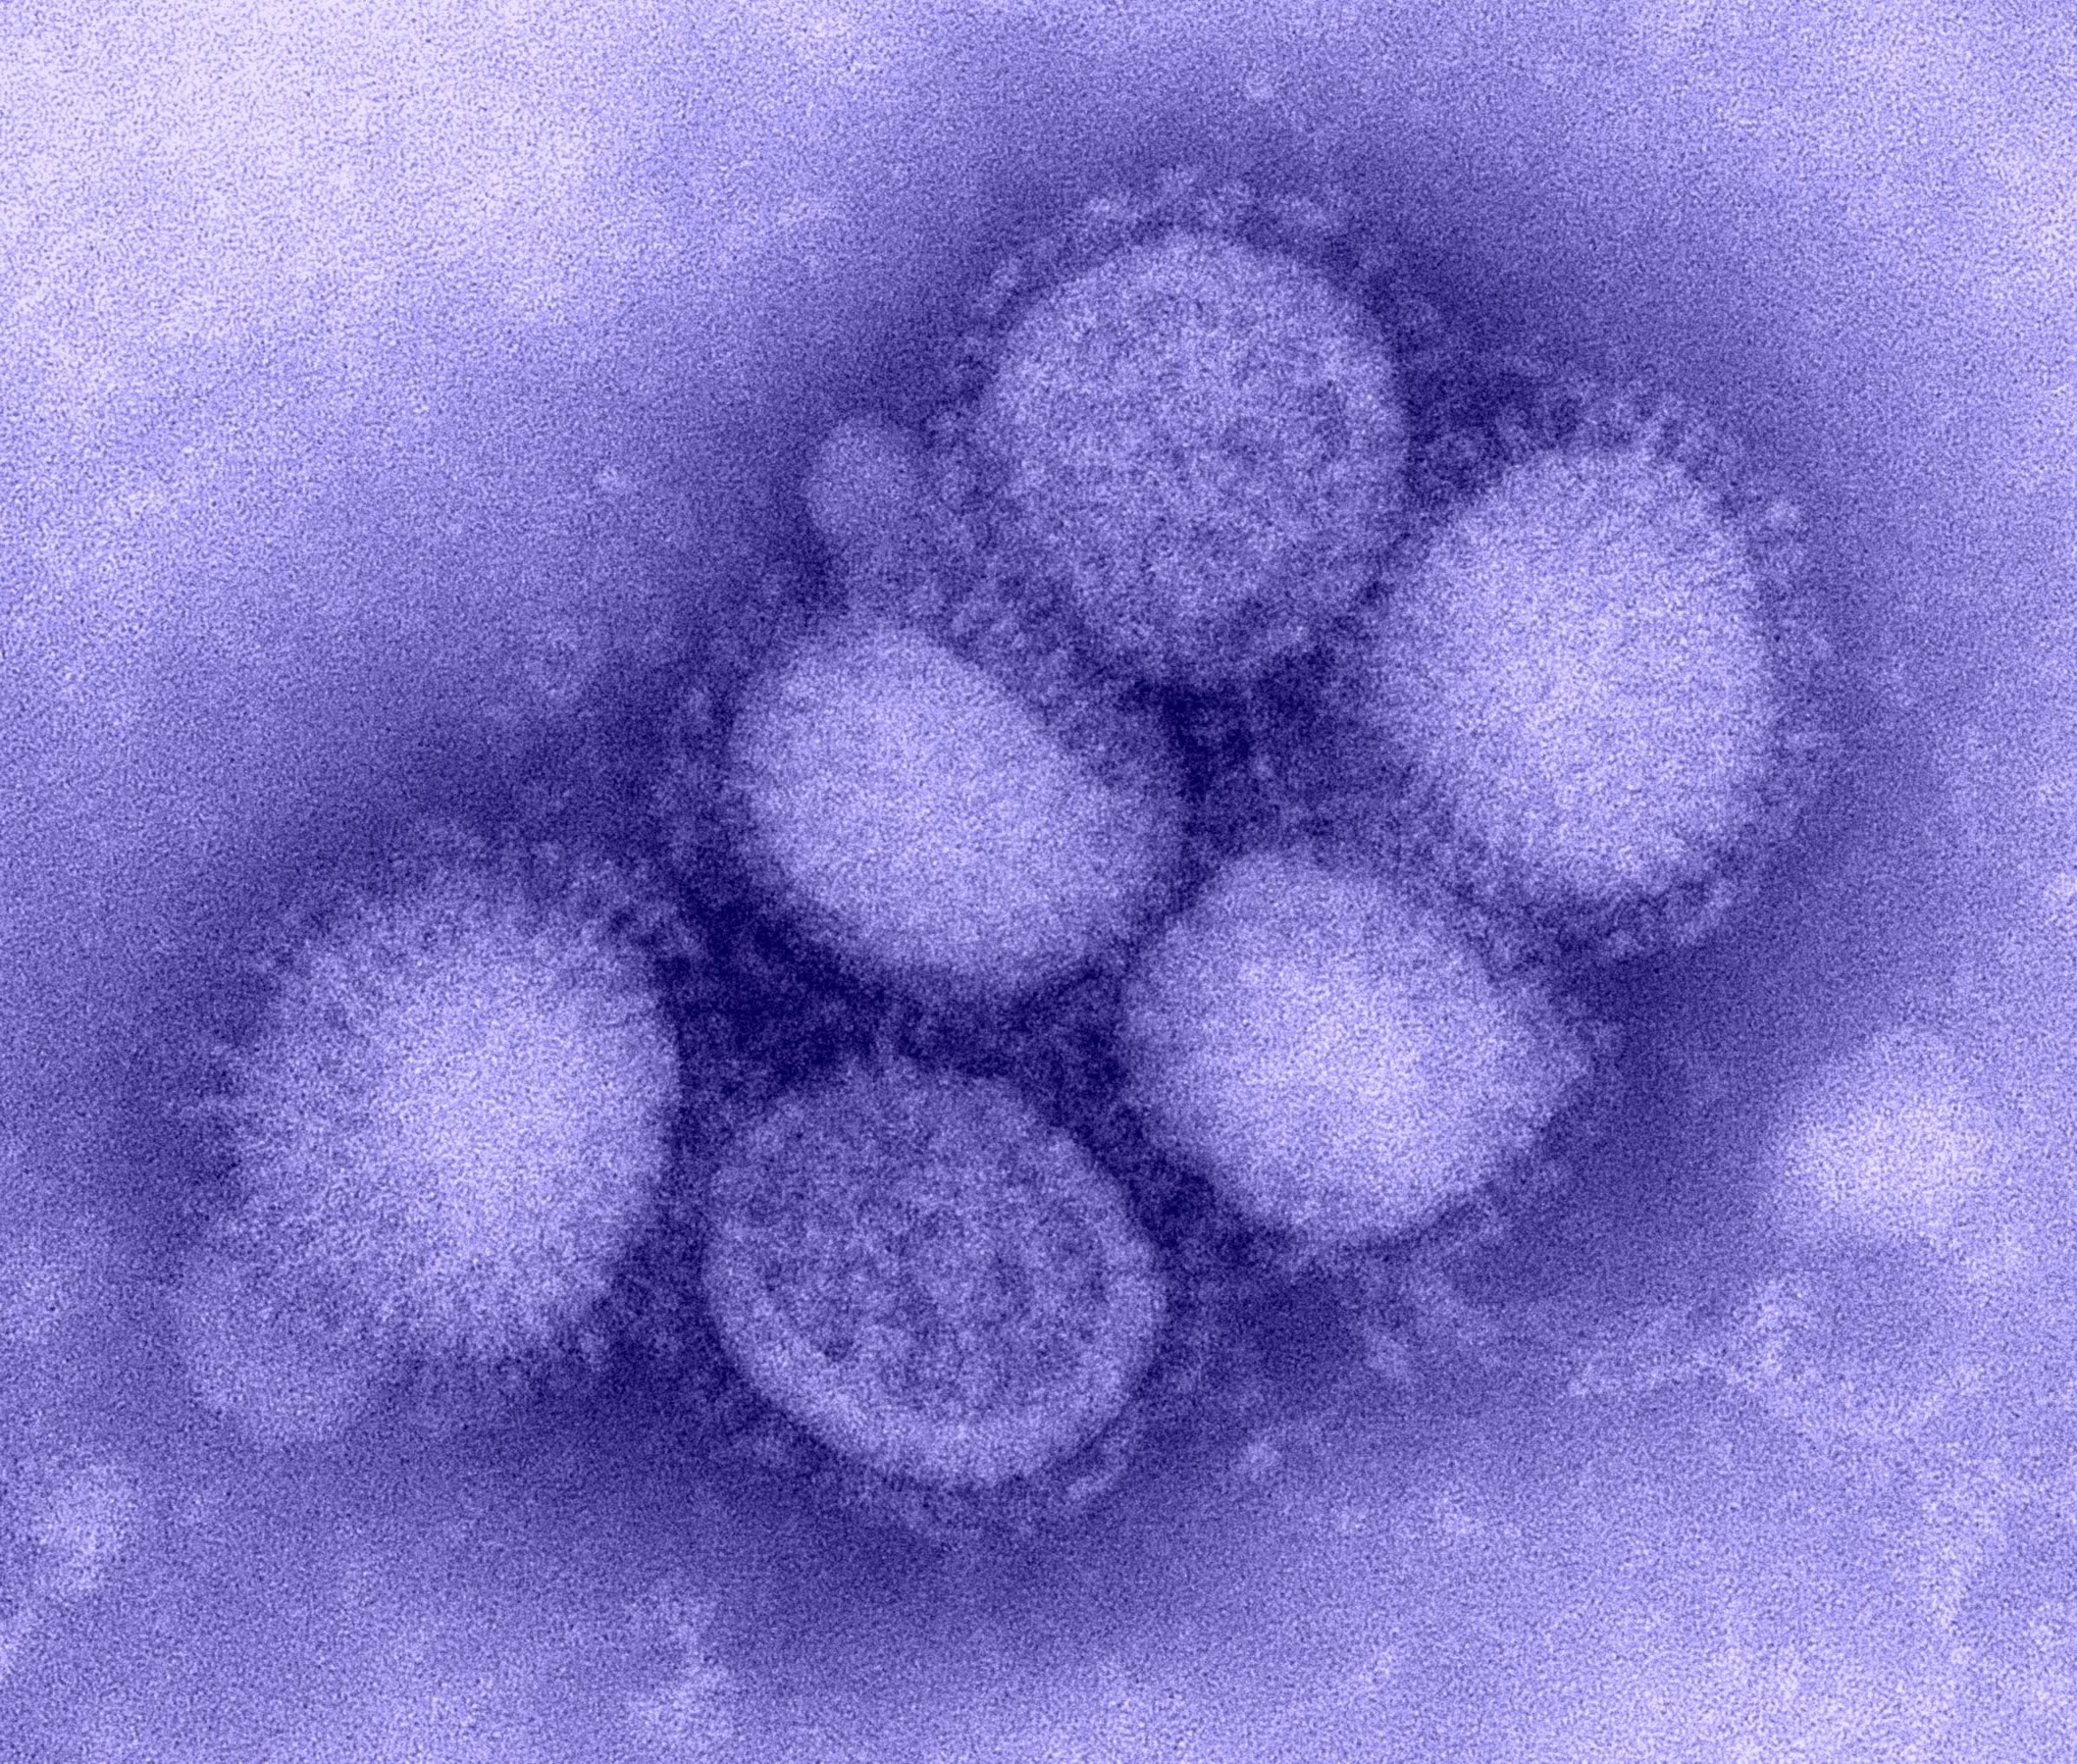 Вирусы 1 группы. Вирус свиного гриппа (h1n1). H2n2 вирус. Вирус гриппа под микроскопом h1n1. Возбудитель гриппа Orthomyxoviridae.